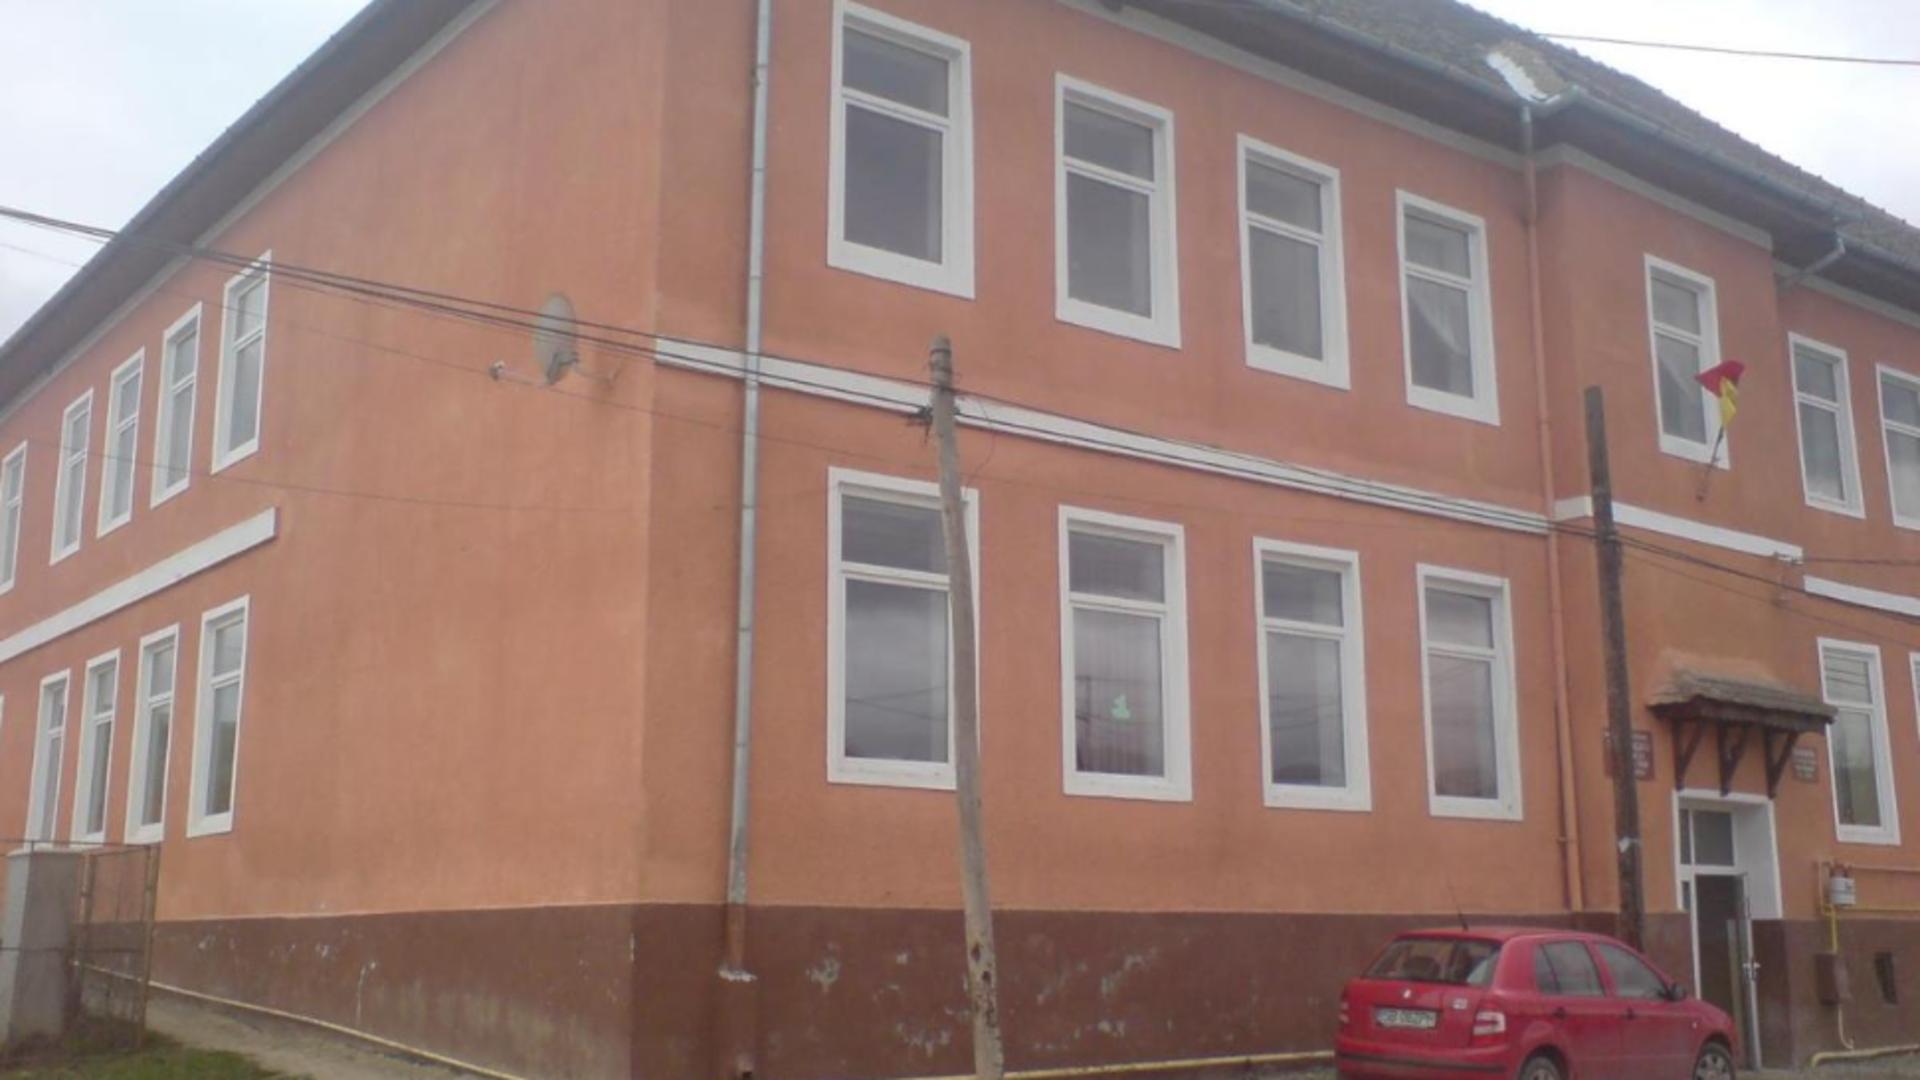 Patru elevi, răniți de tavanul unei săli de clasă care le-a căzut în cap, într-o școală din județul Sibiu